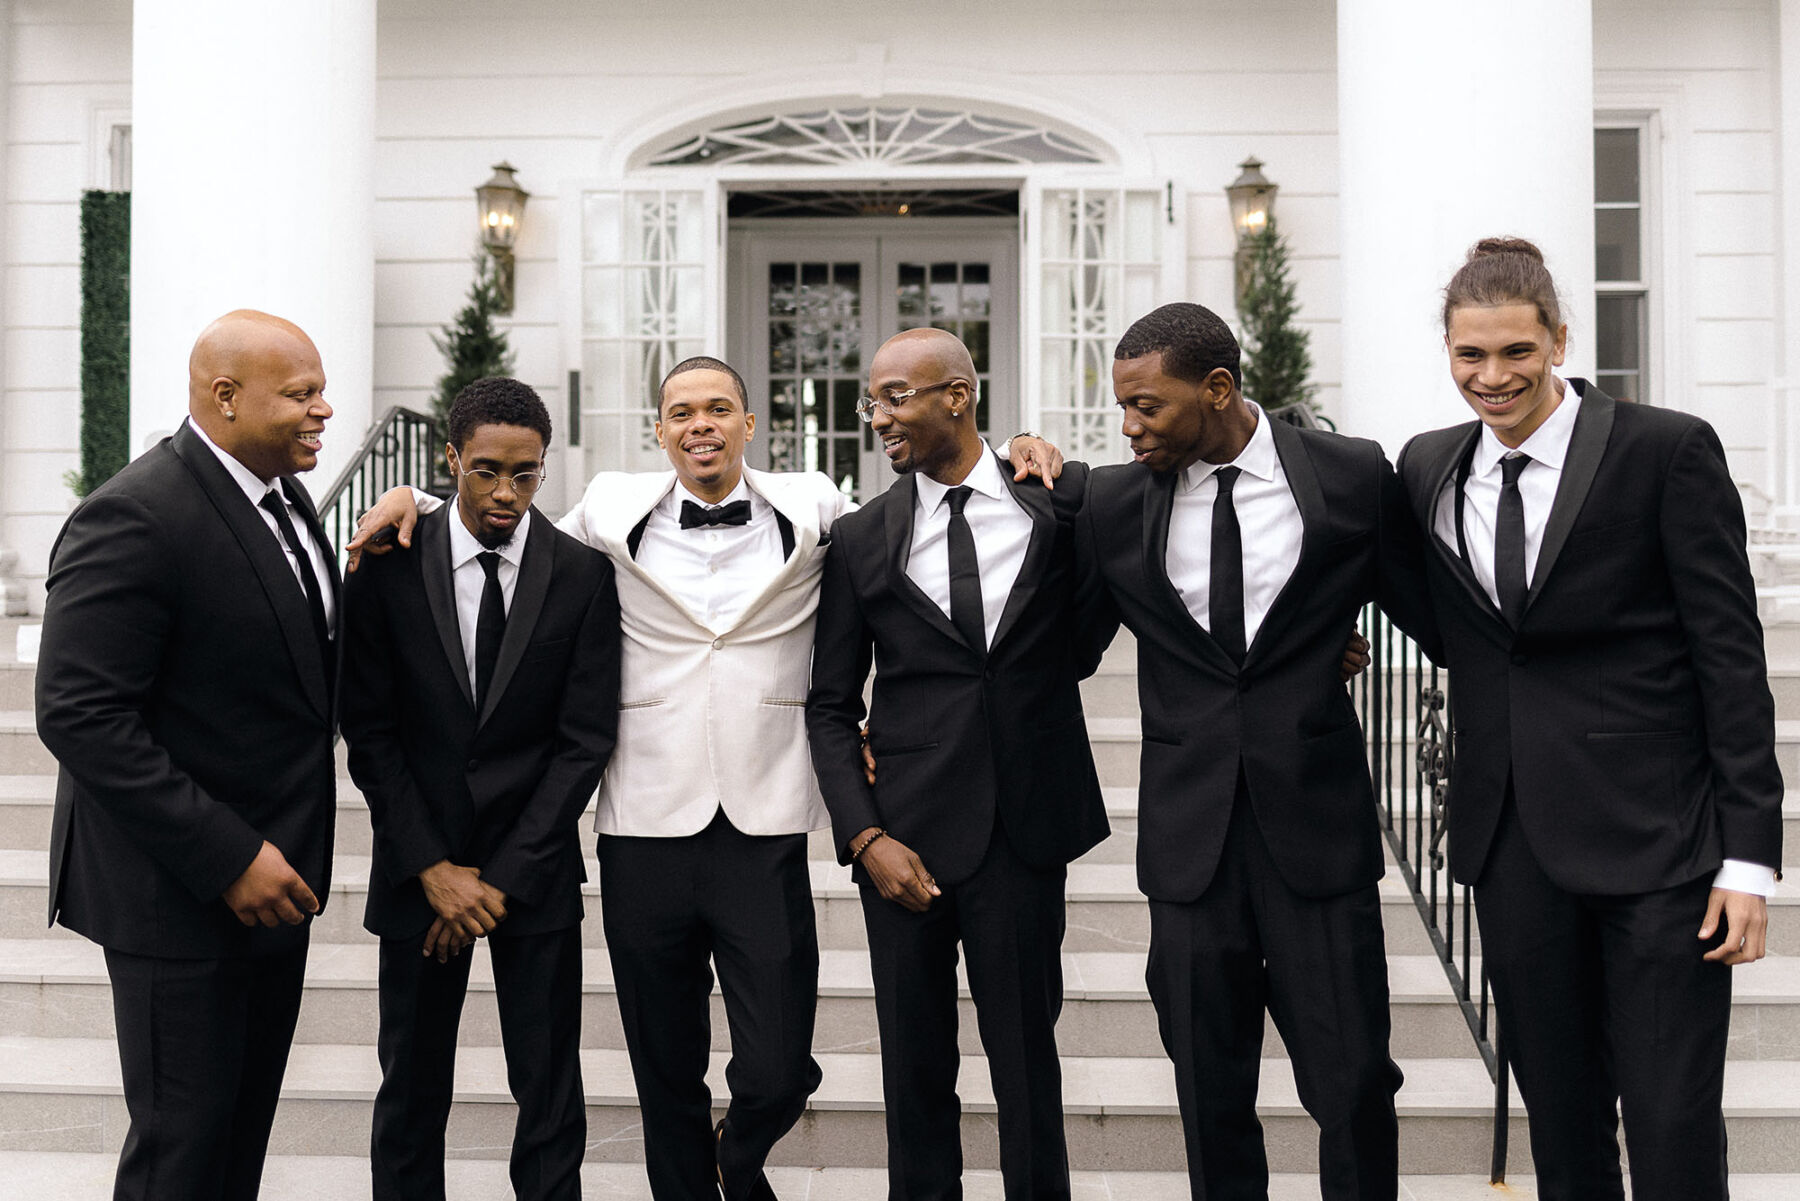 Black groom in white tuxedo and groomsmen in black tuxedo / black tie